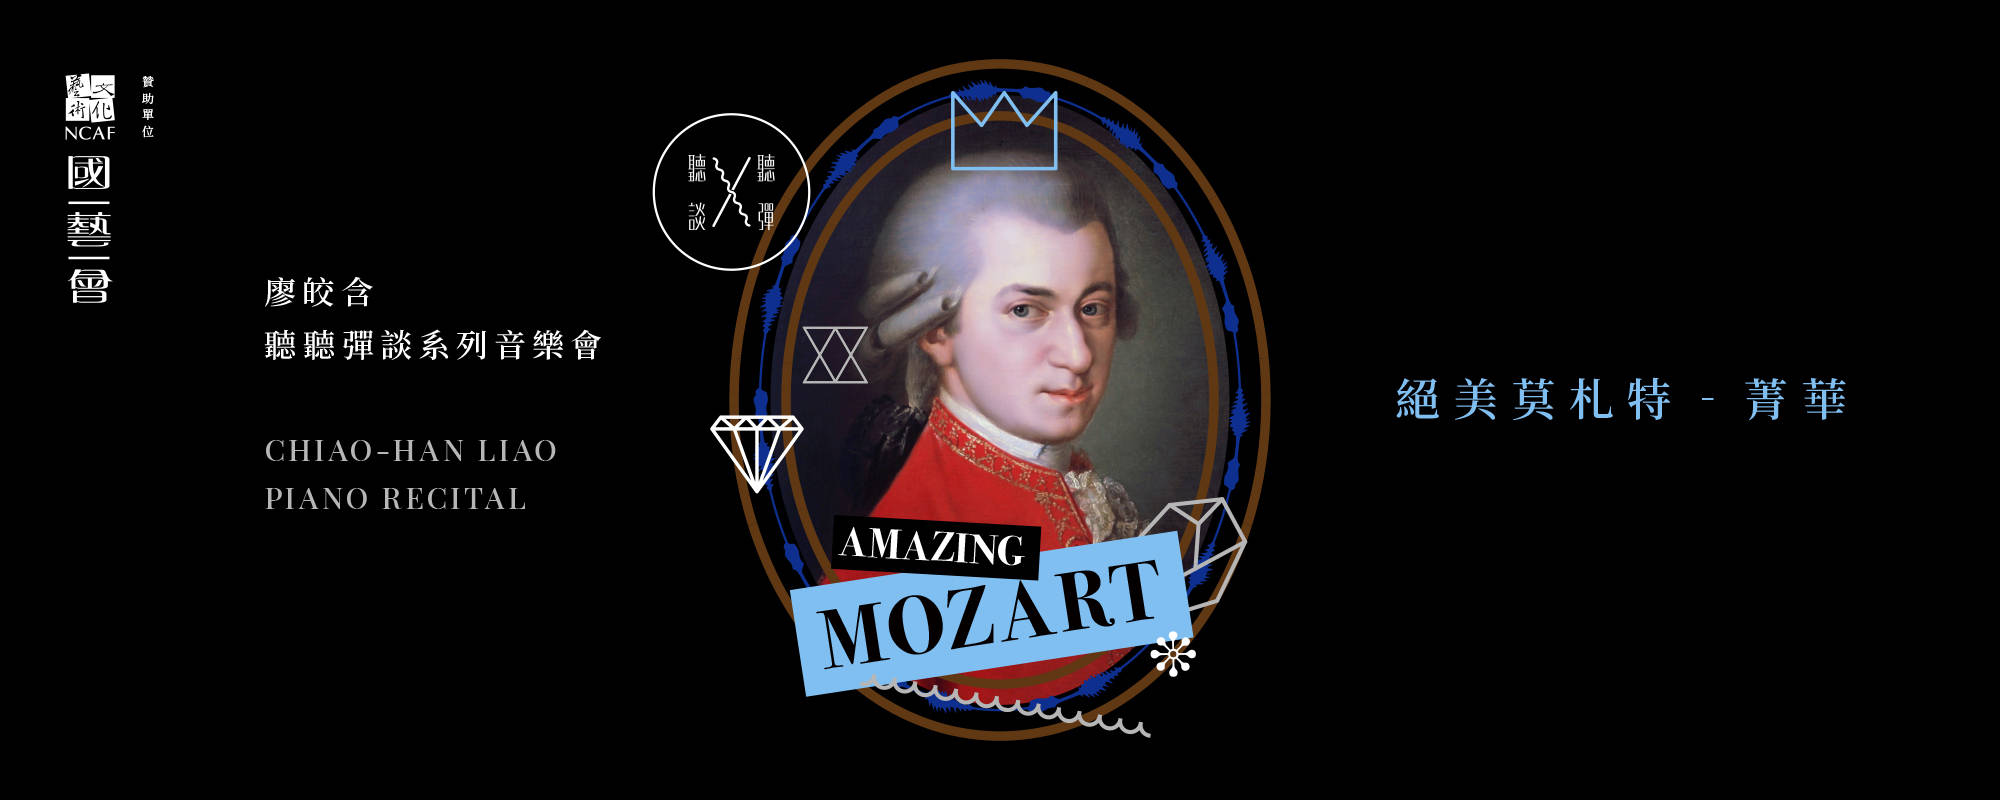 聽聽 彈談XV～絕美莫札特Amazing Mozart《菁華》